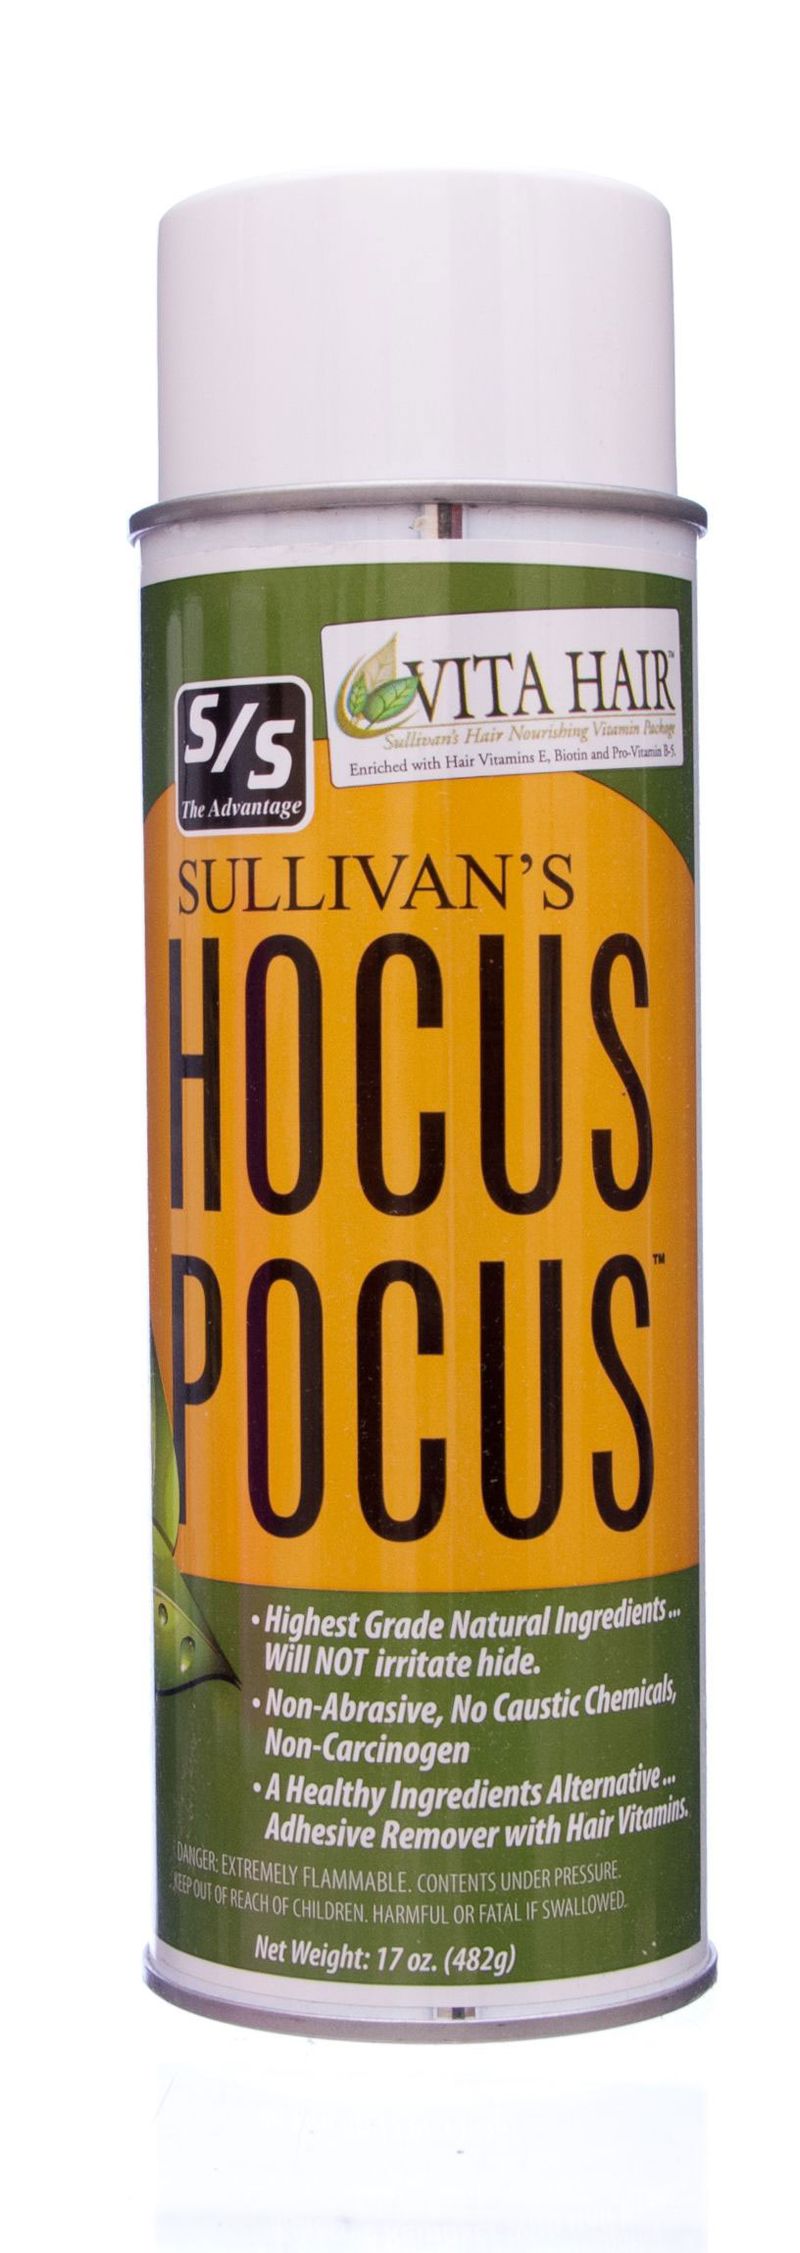 Sullivan-s-Hocus-Pocus